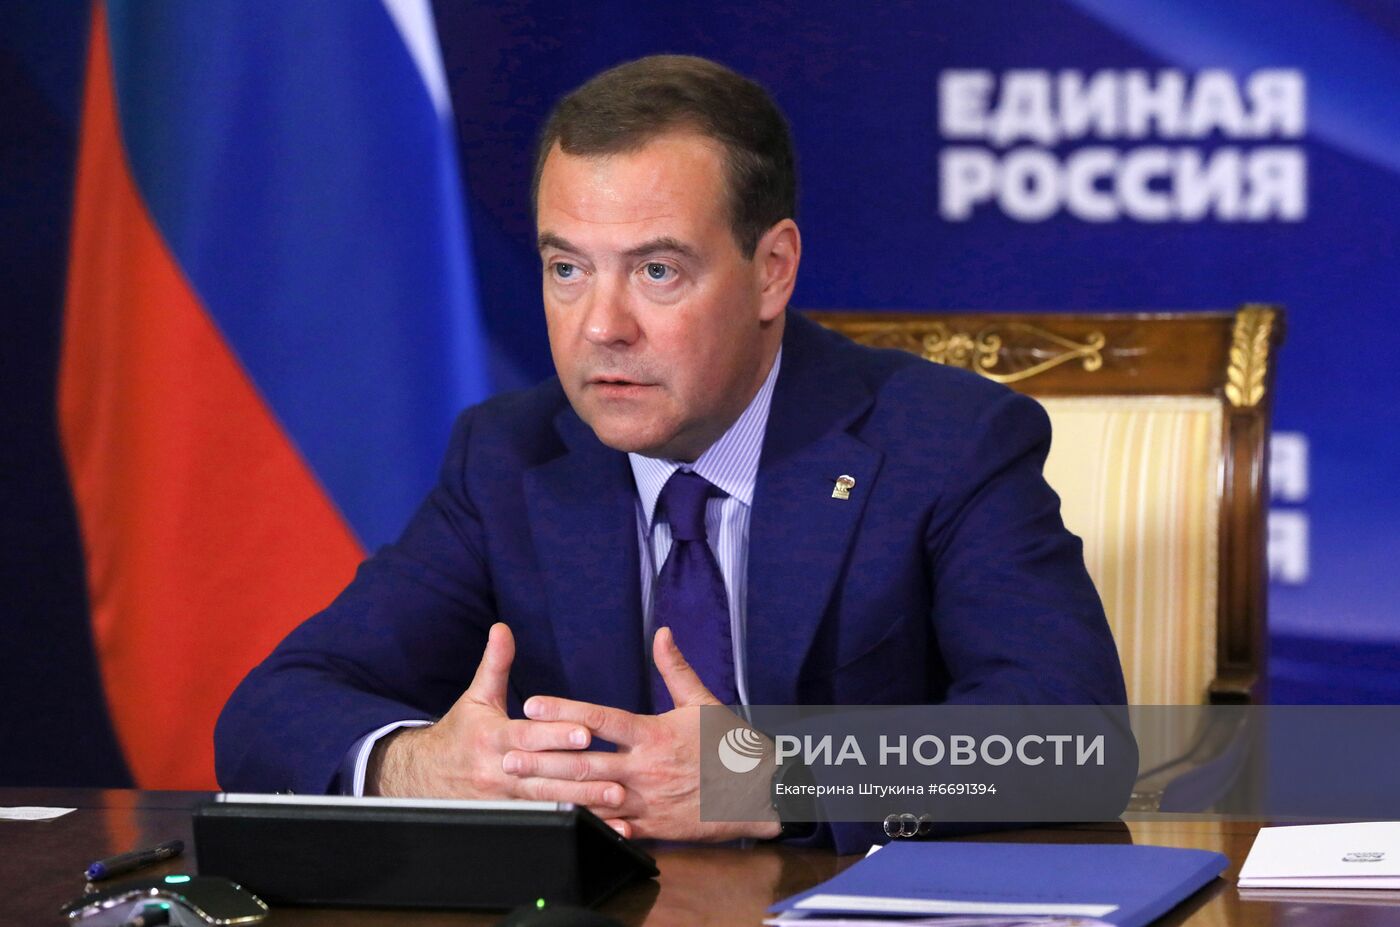 Председатель "Единой России" Д. Медведев провел совещание в Горках